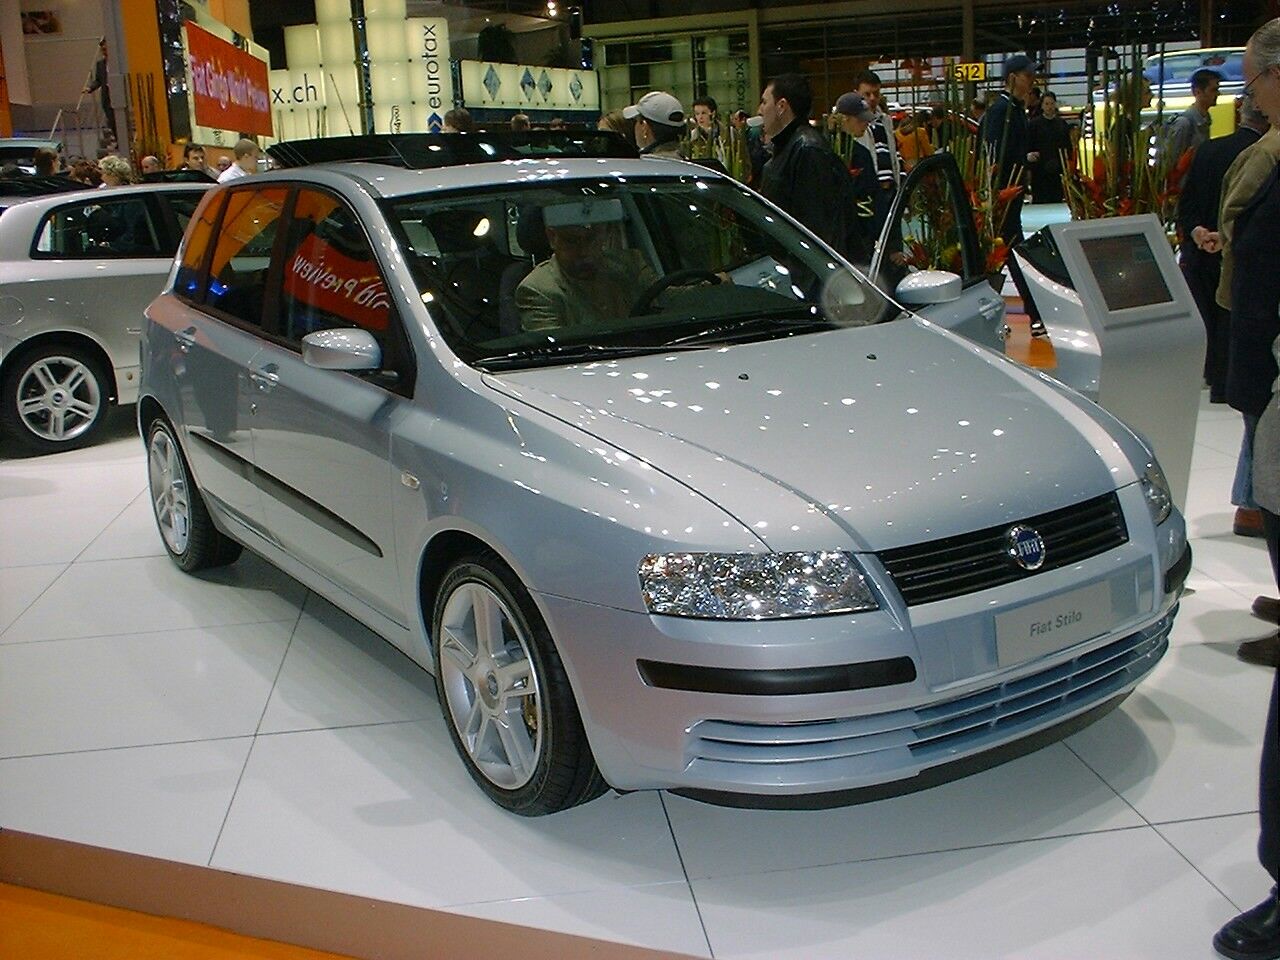 Fiat Stilo 1.9 JTD 5-door at the 2003 Geneva Motor Show